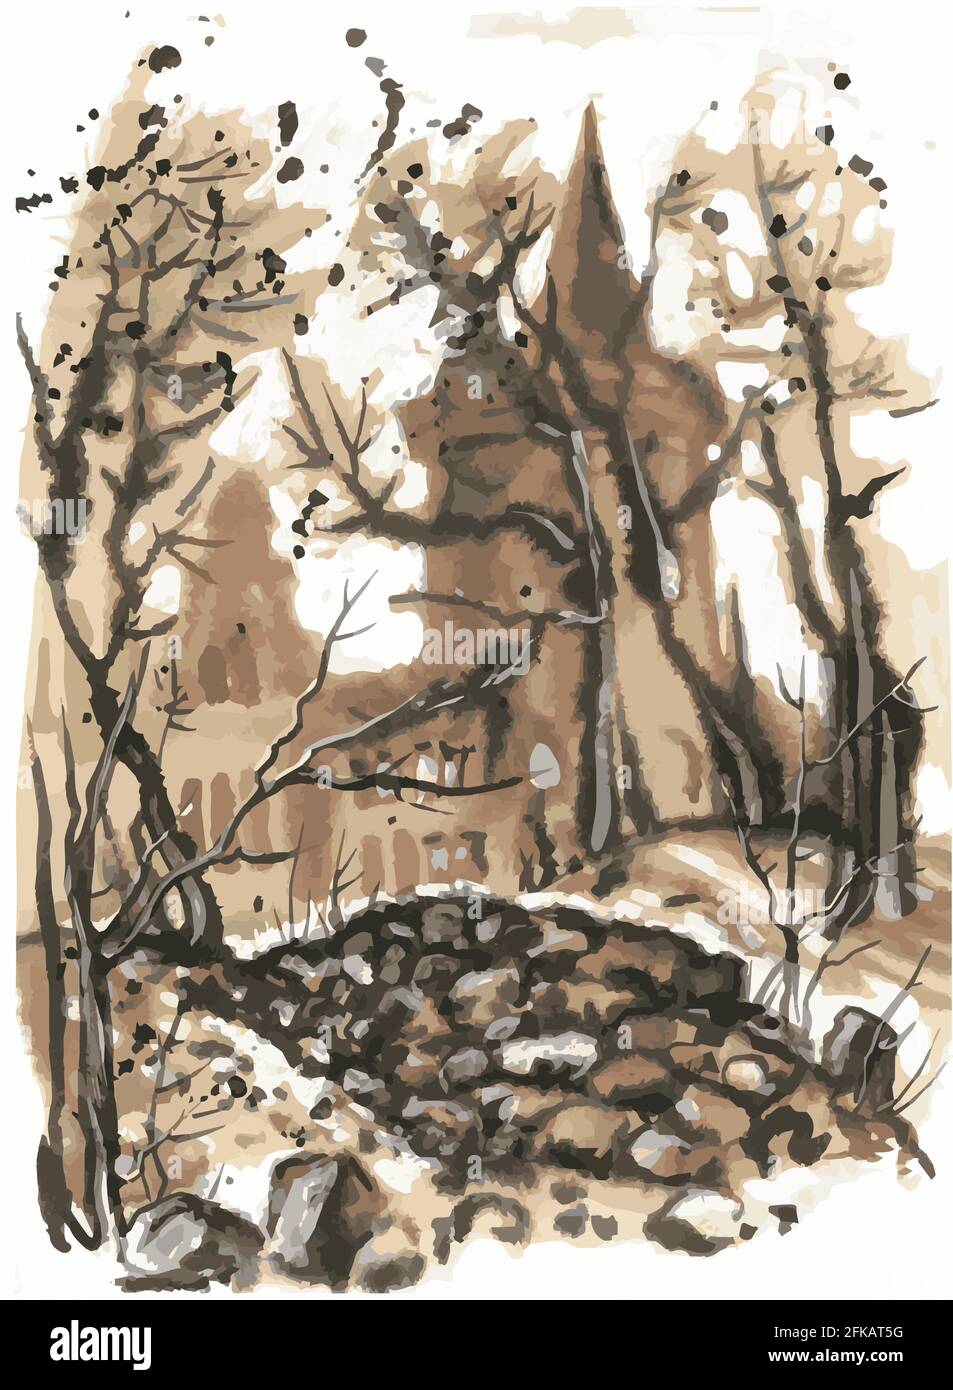 Die Umrisse des alten Schlosses leuchten durch die Bäume. Ein Steinhaufen im Vordergrund. Skizze. Monochrom. Sepia. Stock Vektor